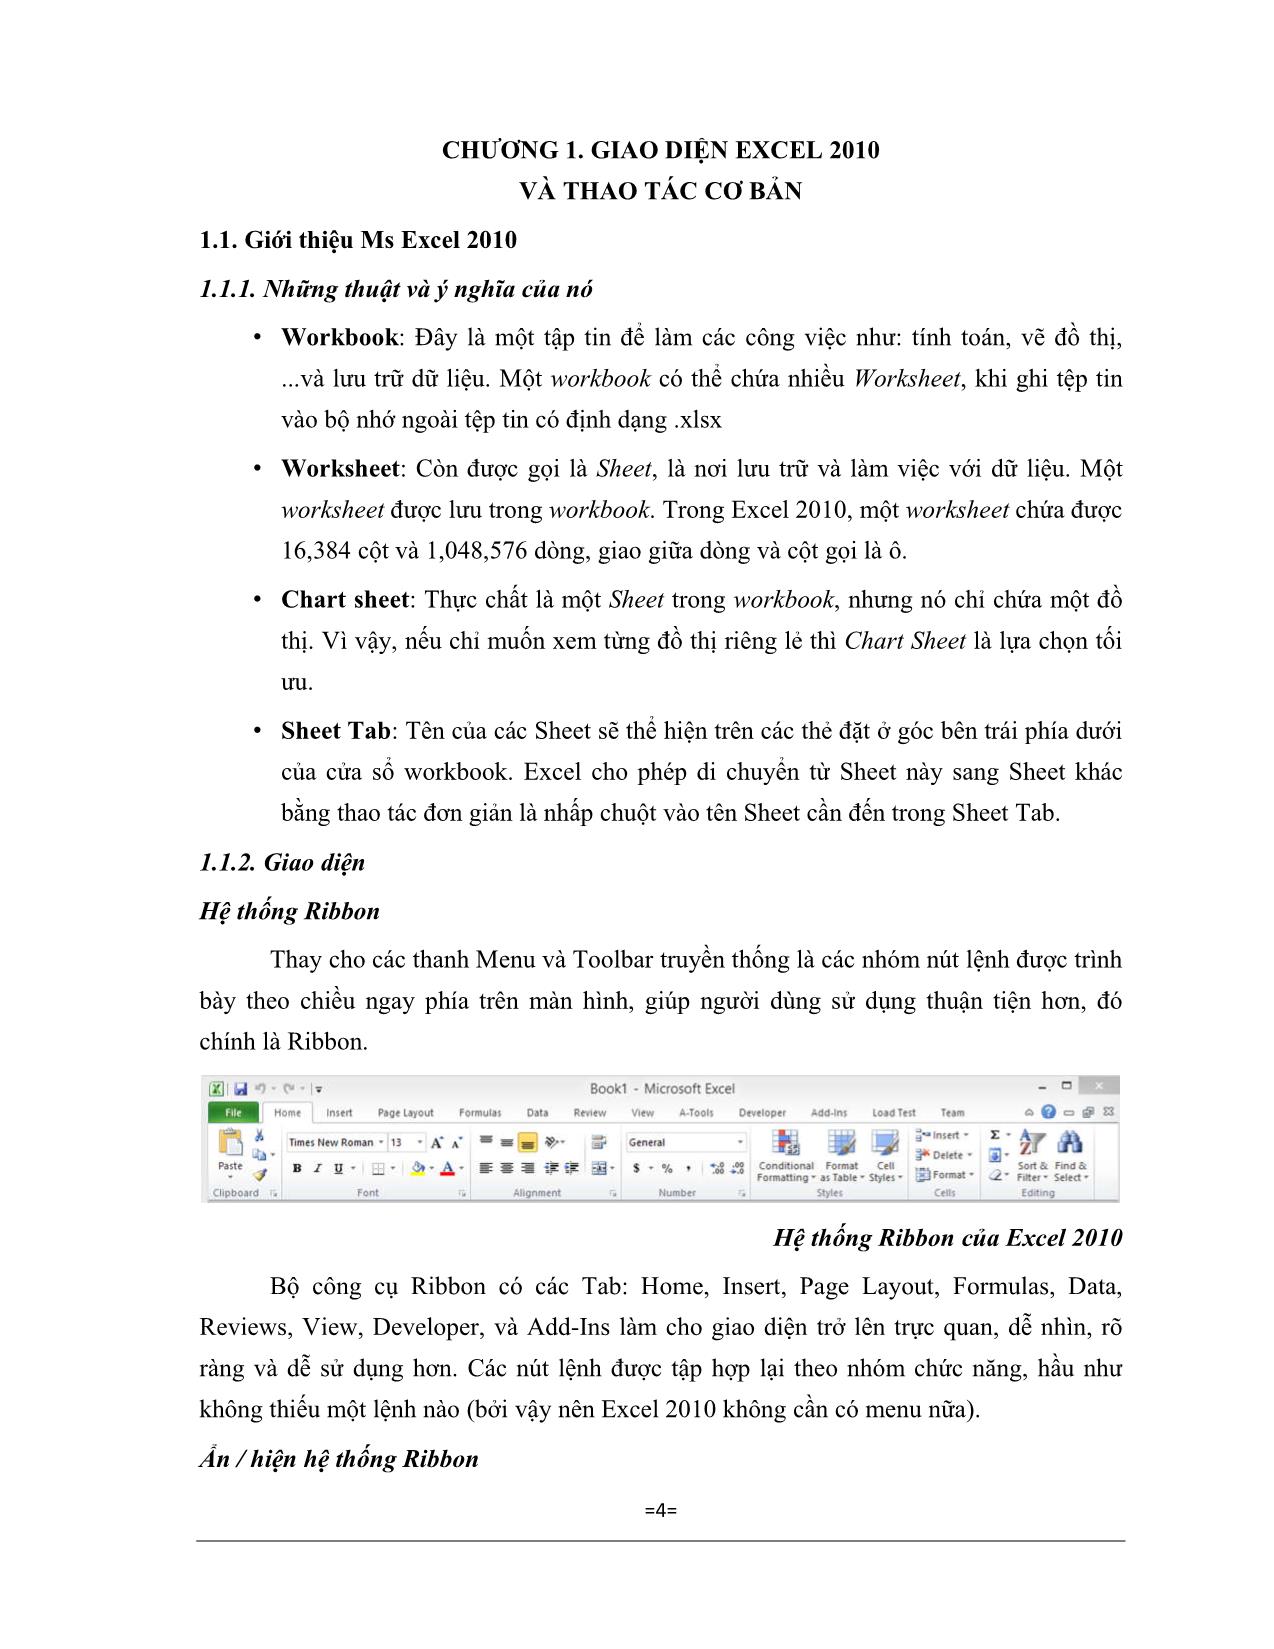 Giáo trình Excel căn bản trang 4